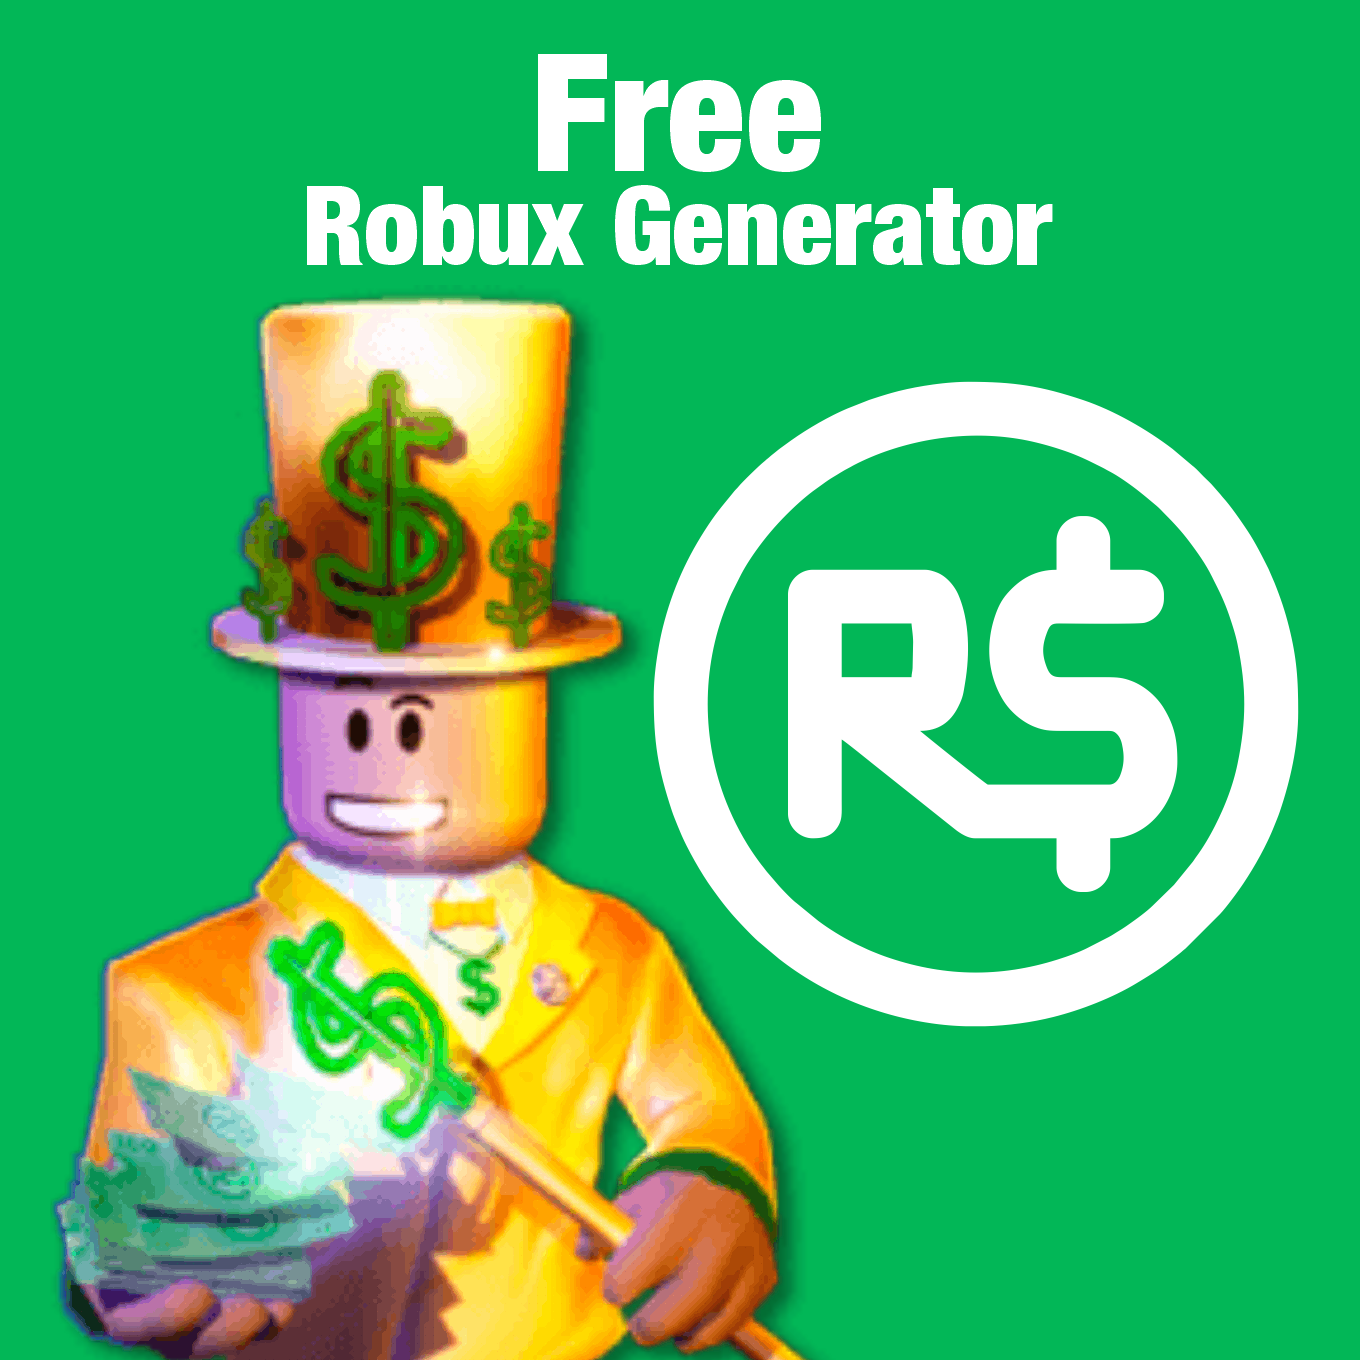 How To Get Free Robux - fastbucks me roblox robux